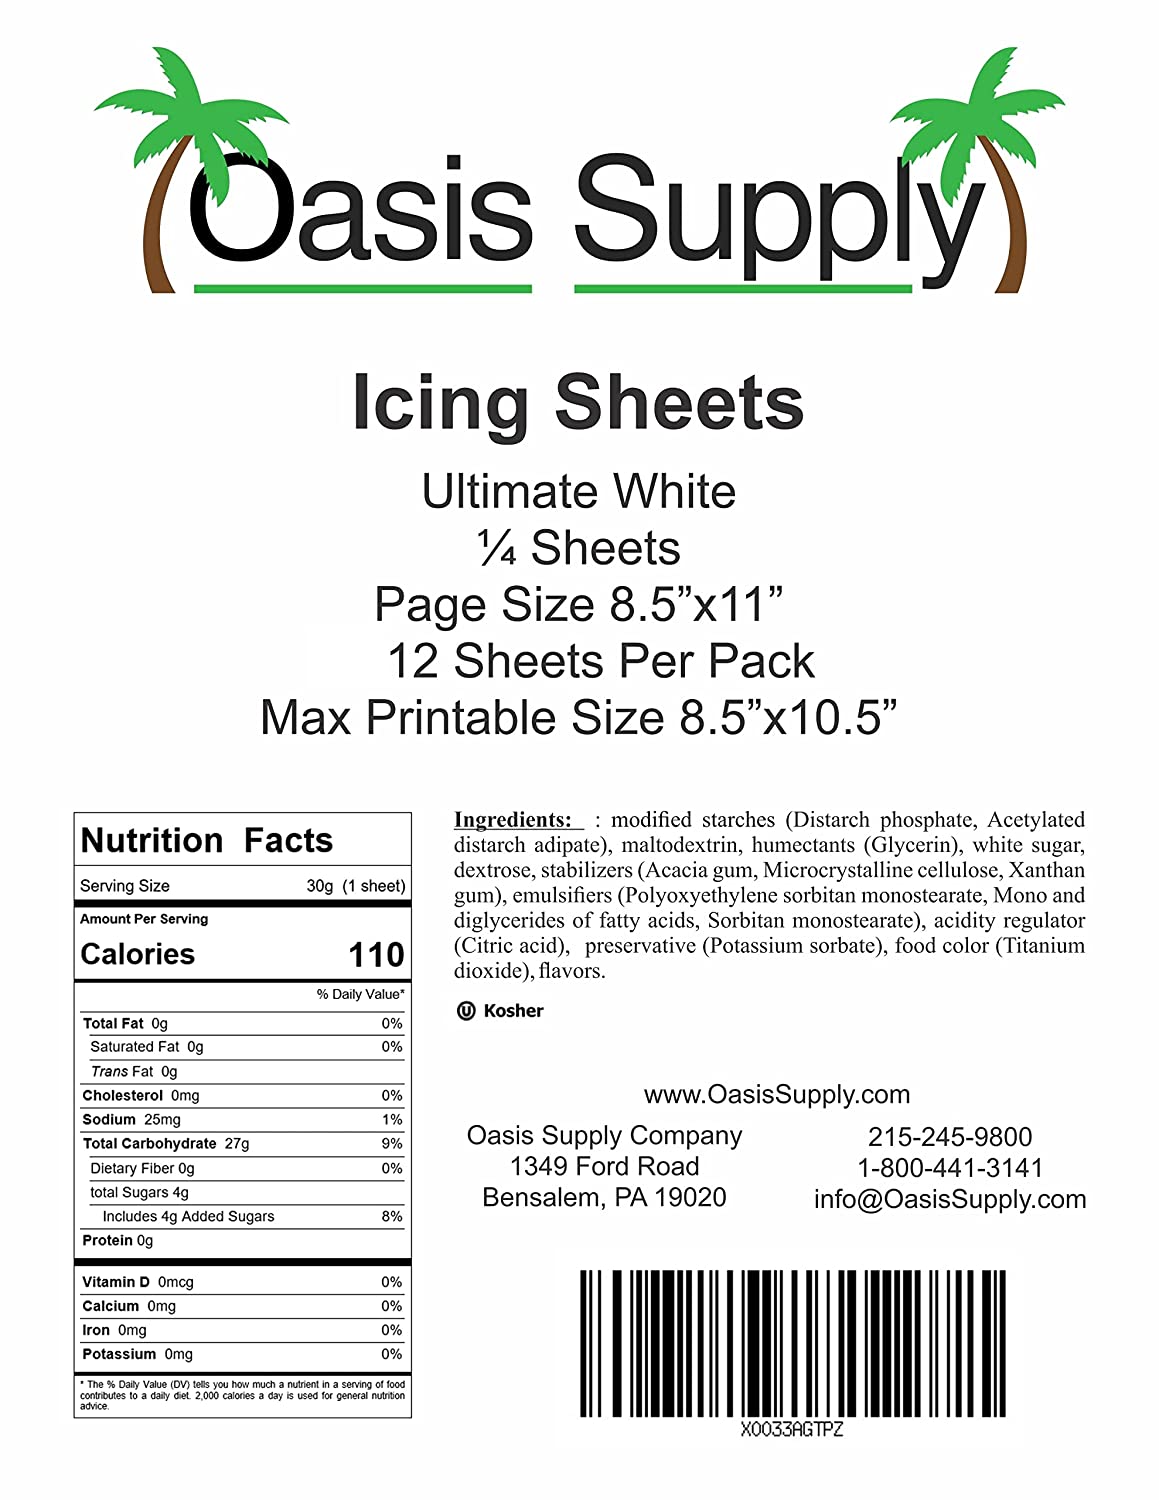 Wafer Paper - O PLUS Grade - 100 Sheets - Improved formula